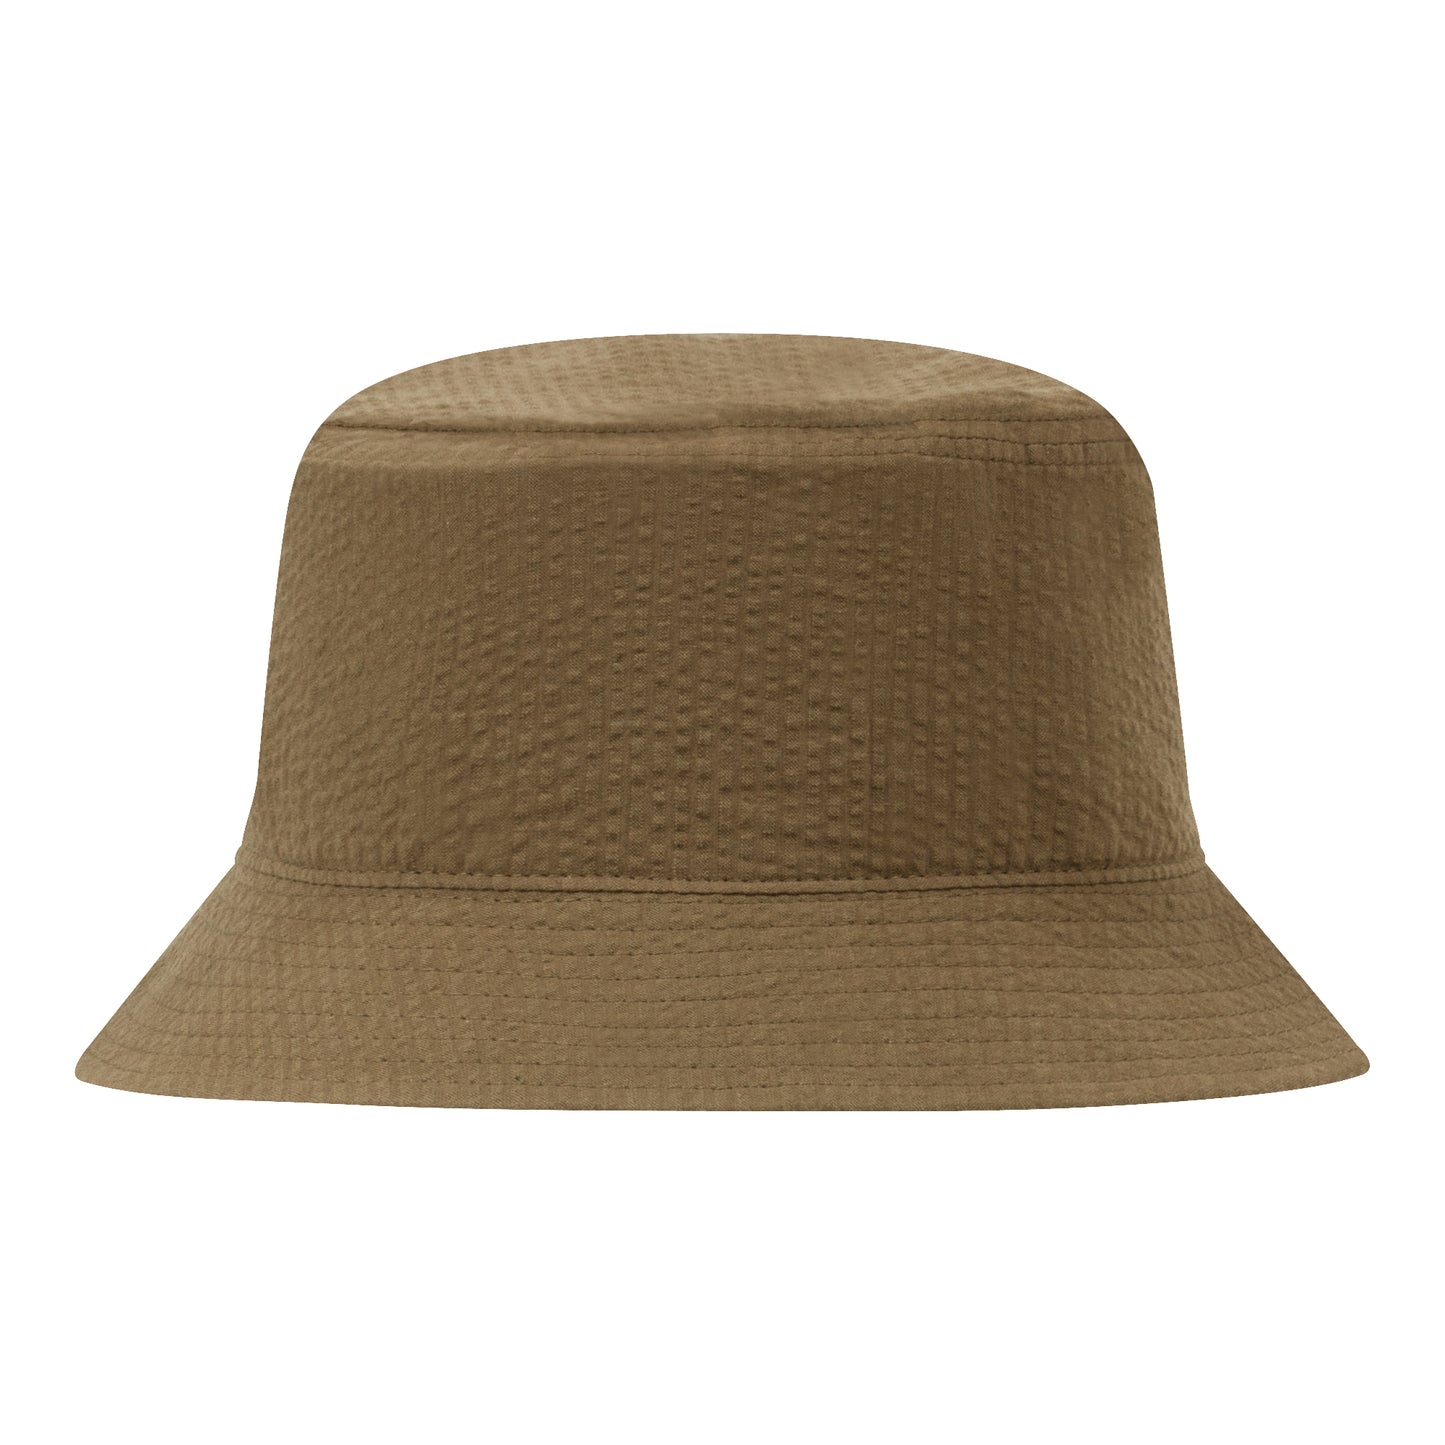 Seersucker Bucket Hat (khaki)